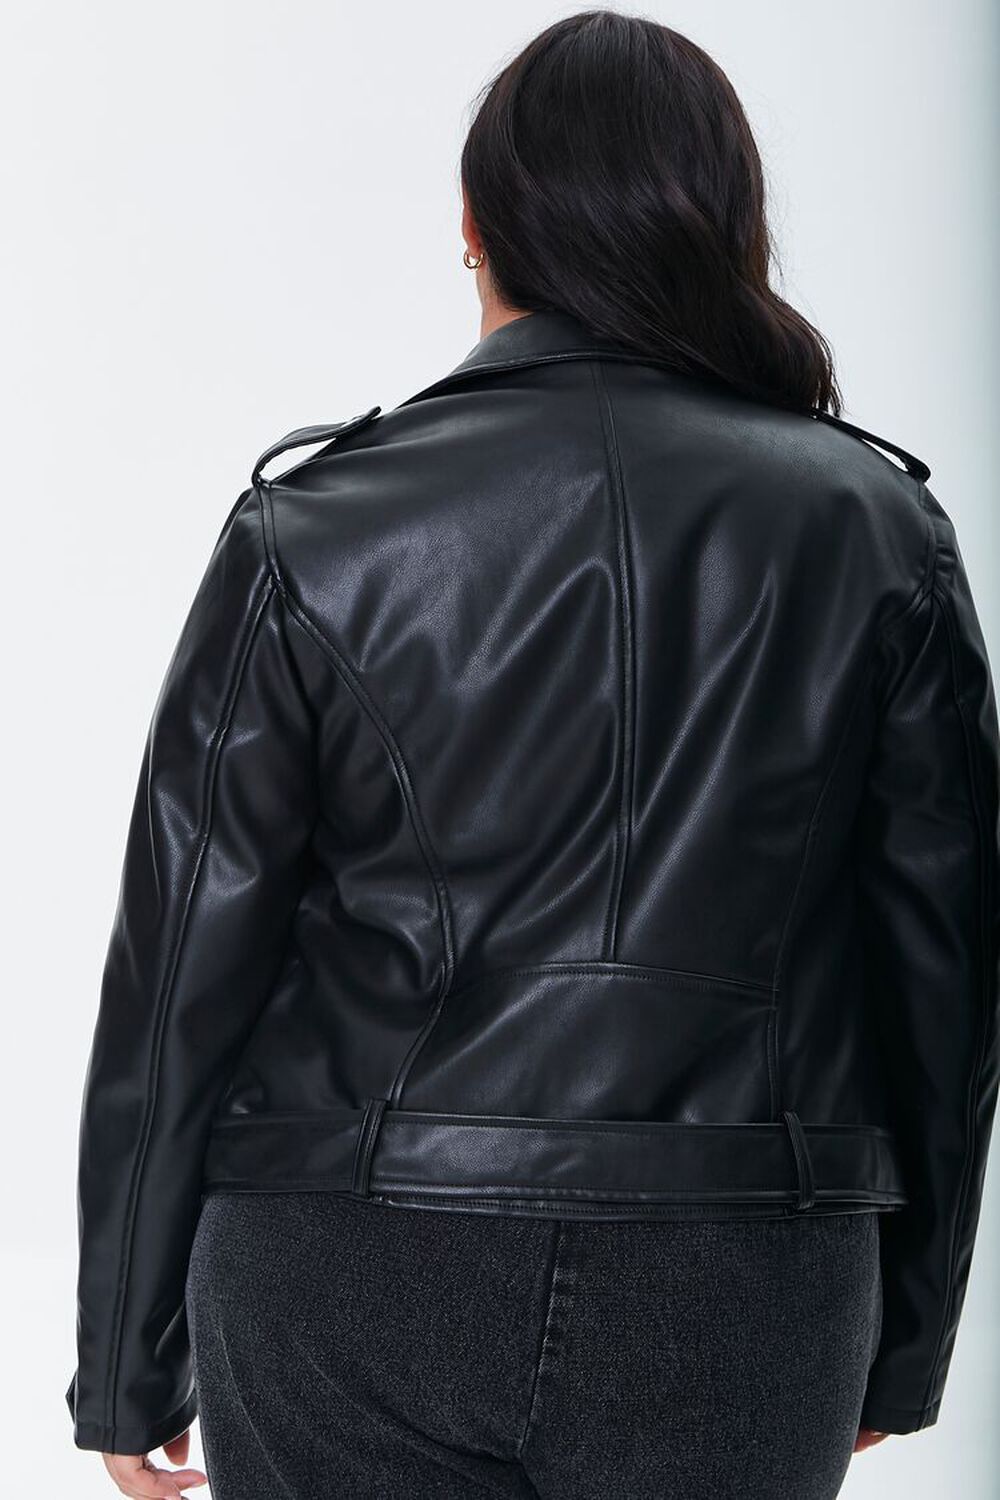 Forever 21 Women's M Faux Vegan Leather Moto Biker Jacket Black READ FLAW